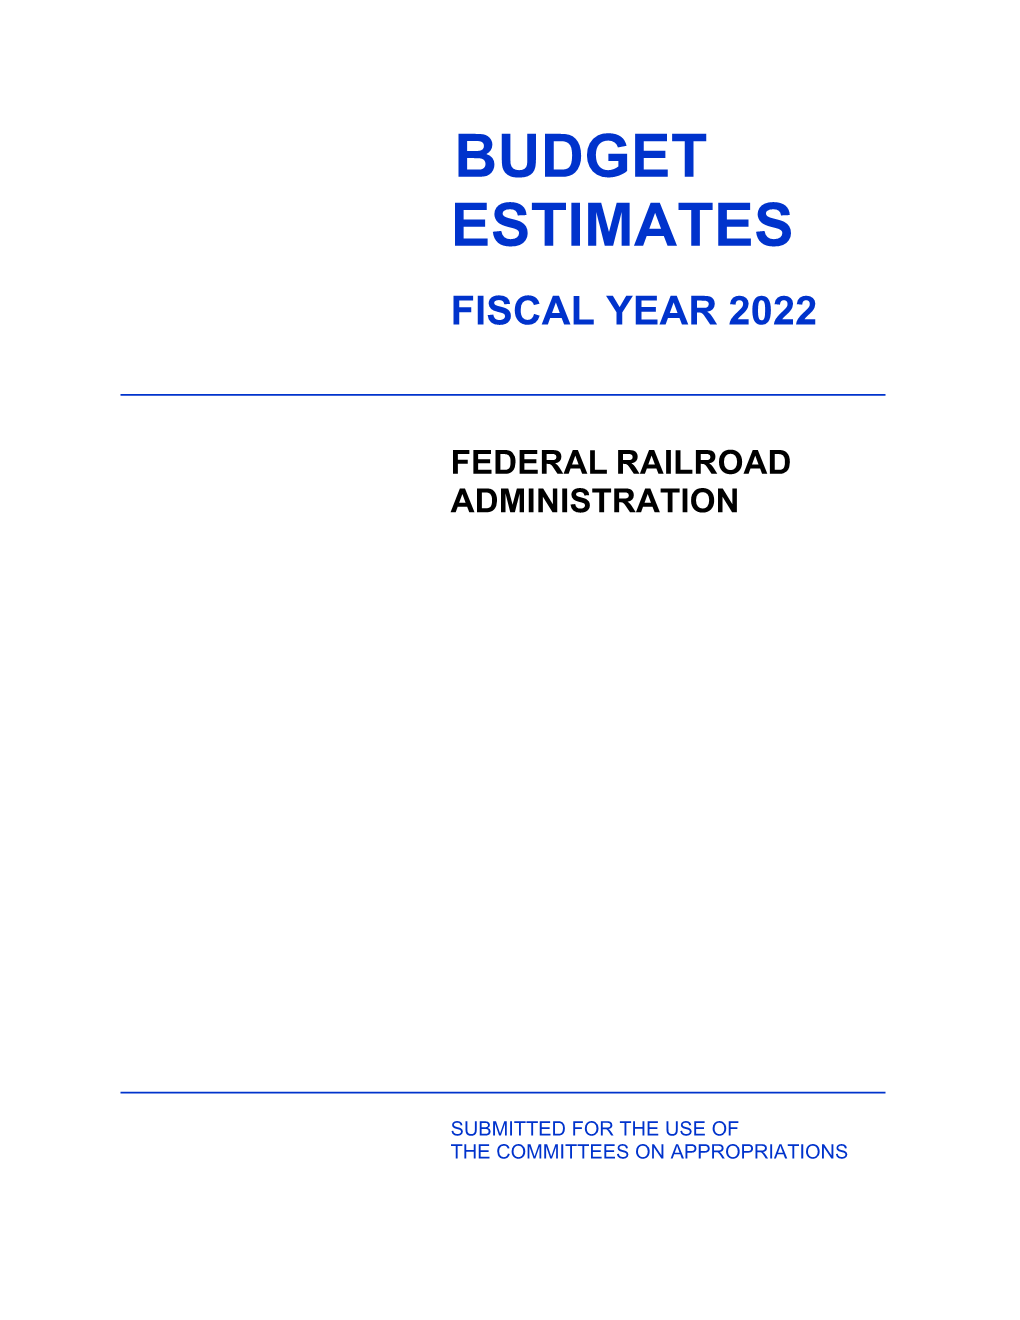 FRA FY 2022 Budget Estimates